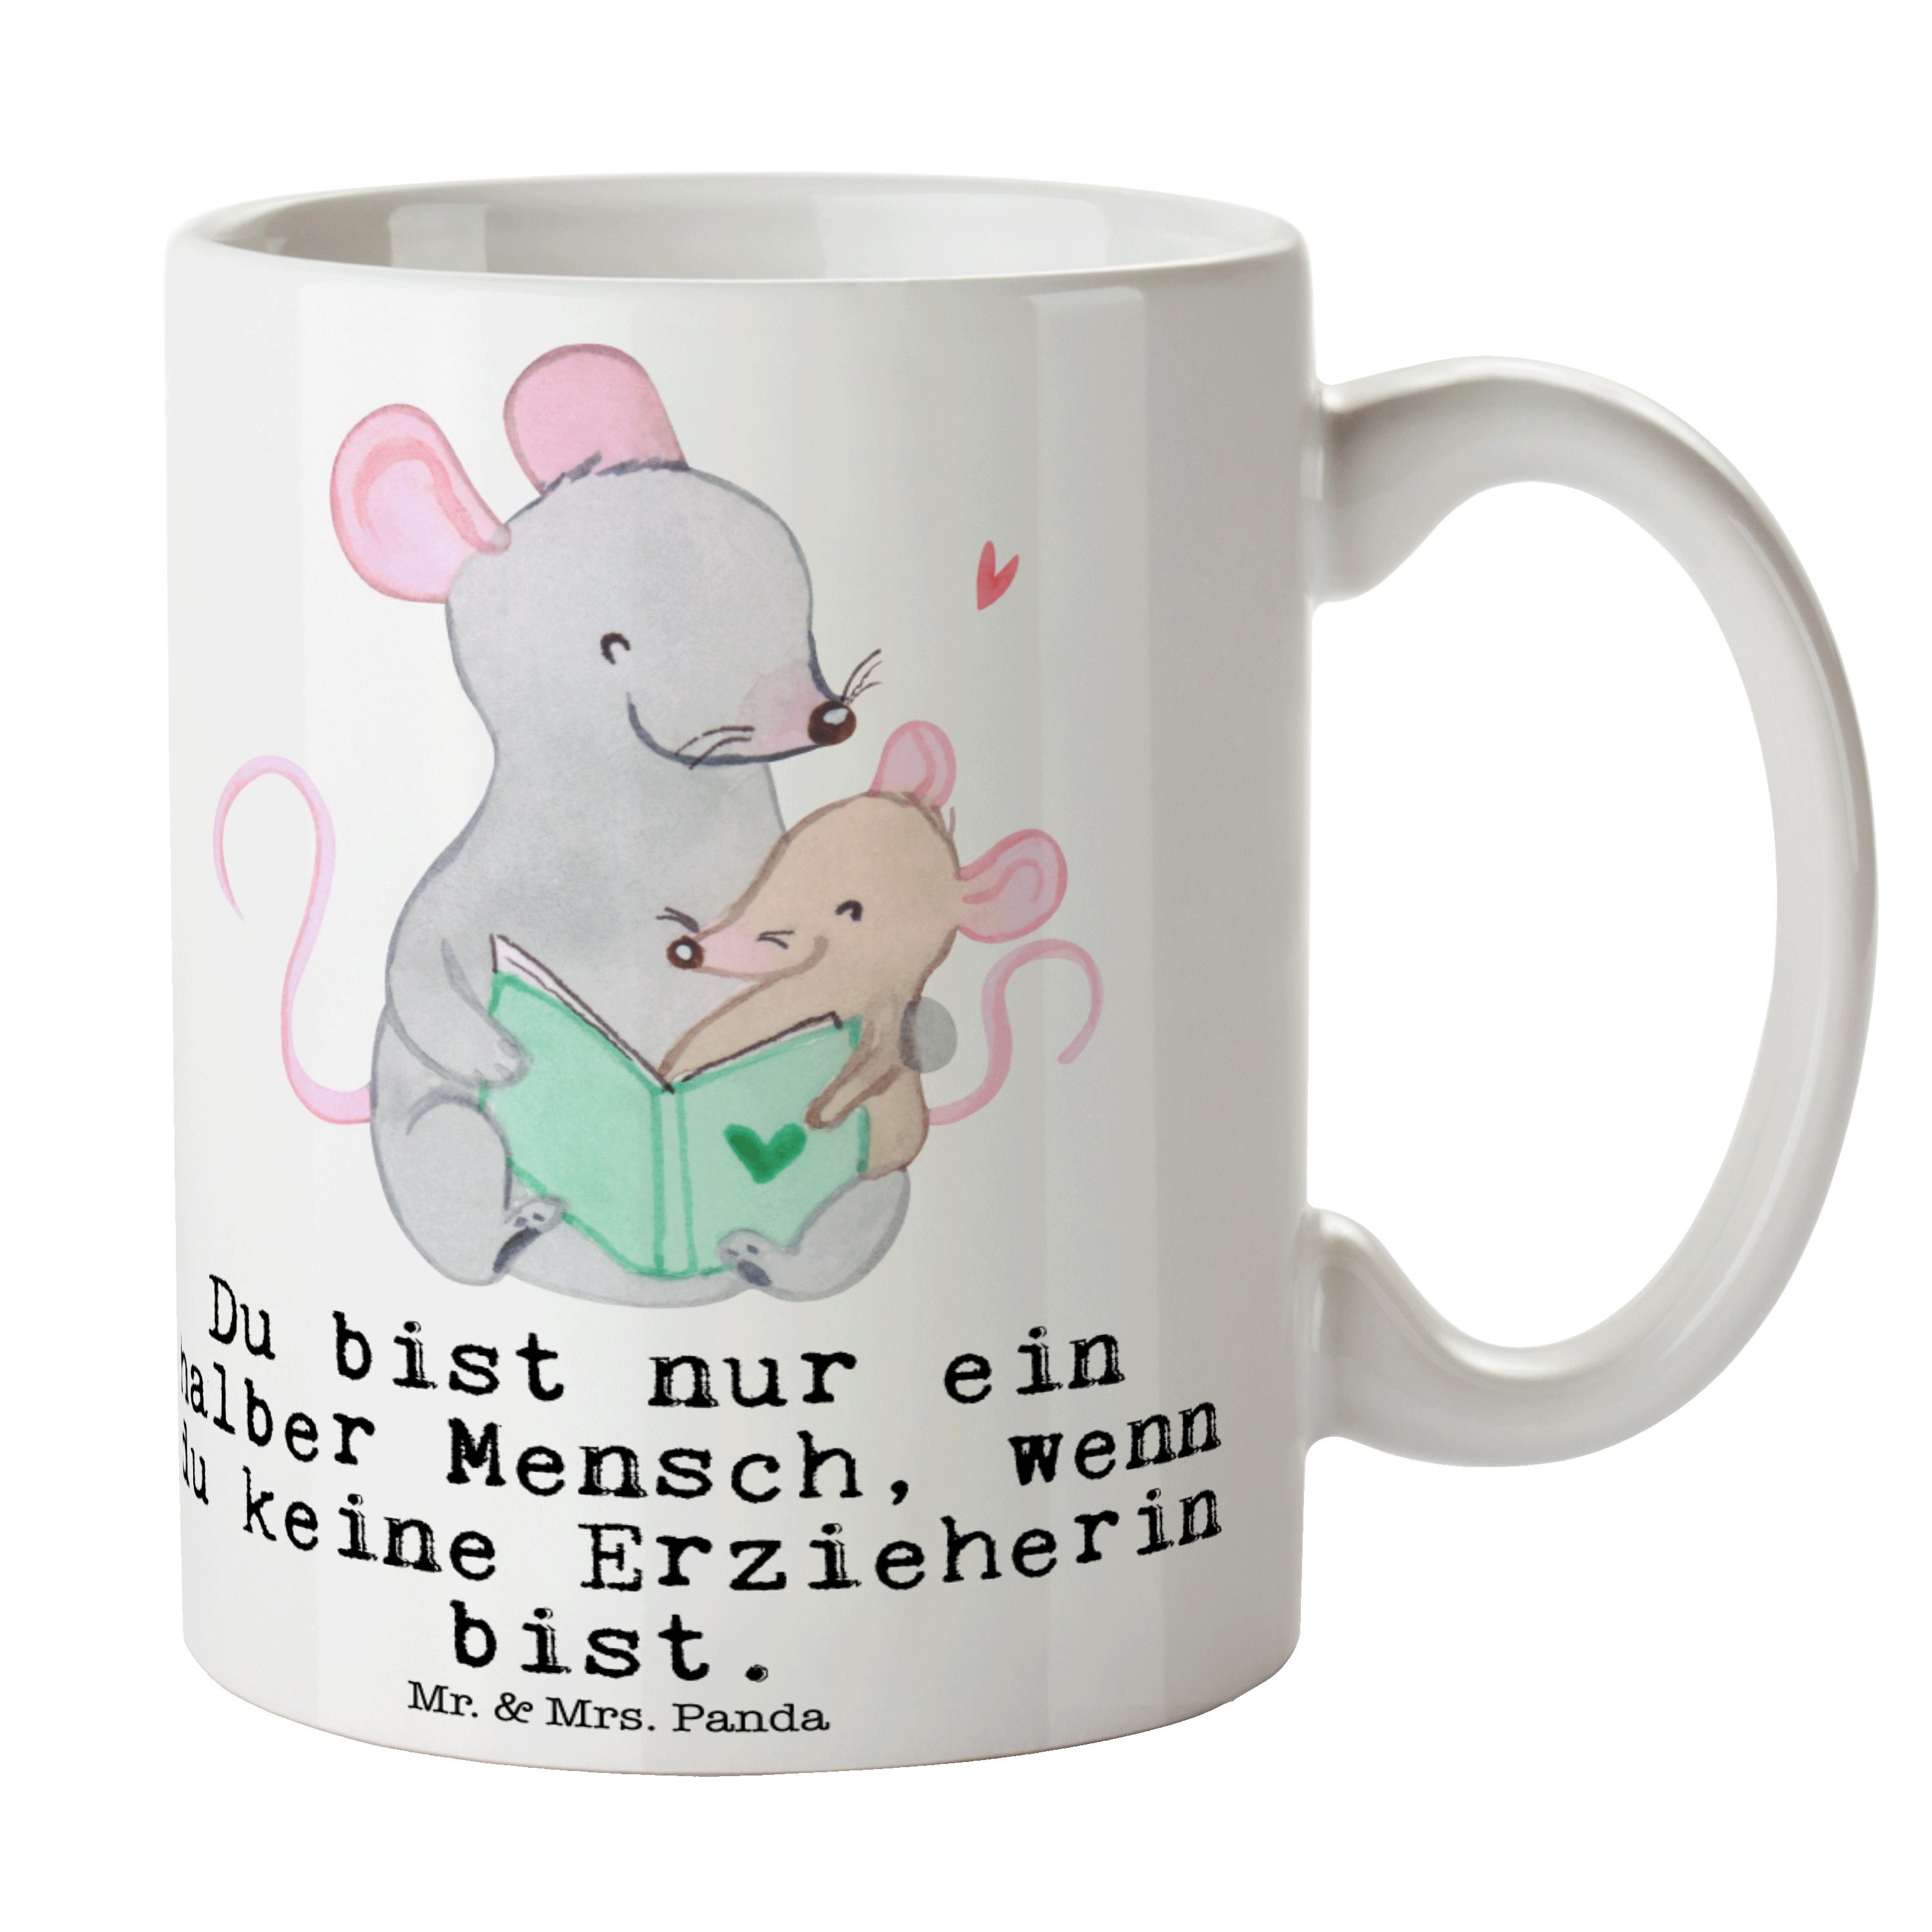 Mr. & Mrs. Panda Tasse Erzieherin mit Herz - Weiß - Geschenk, Tasse Sprüche, Becher, Tasse, Keramik